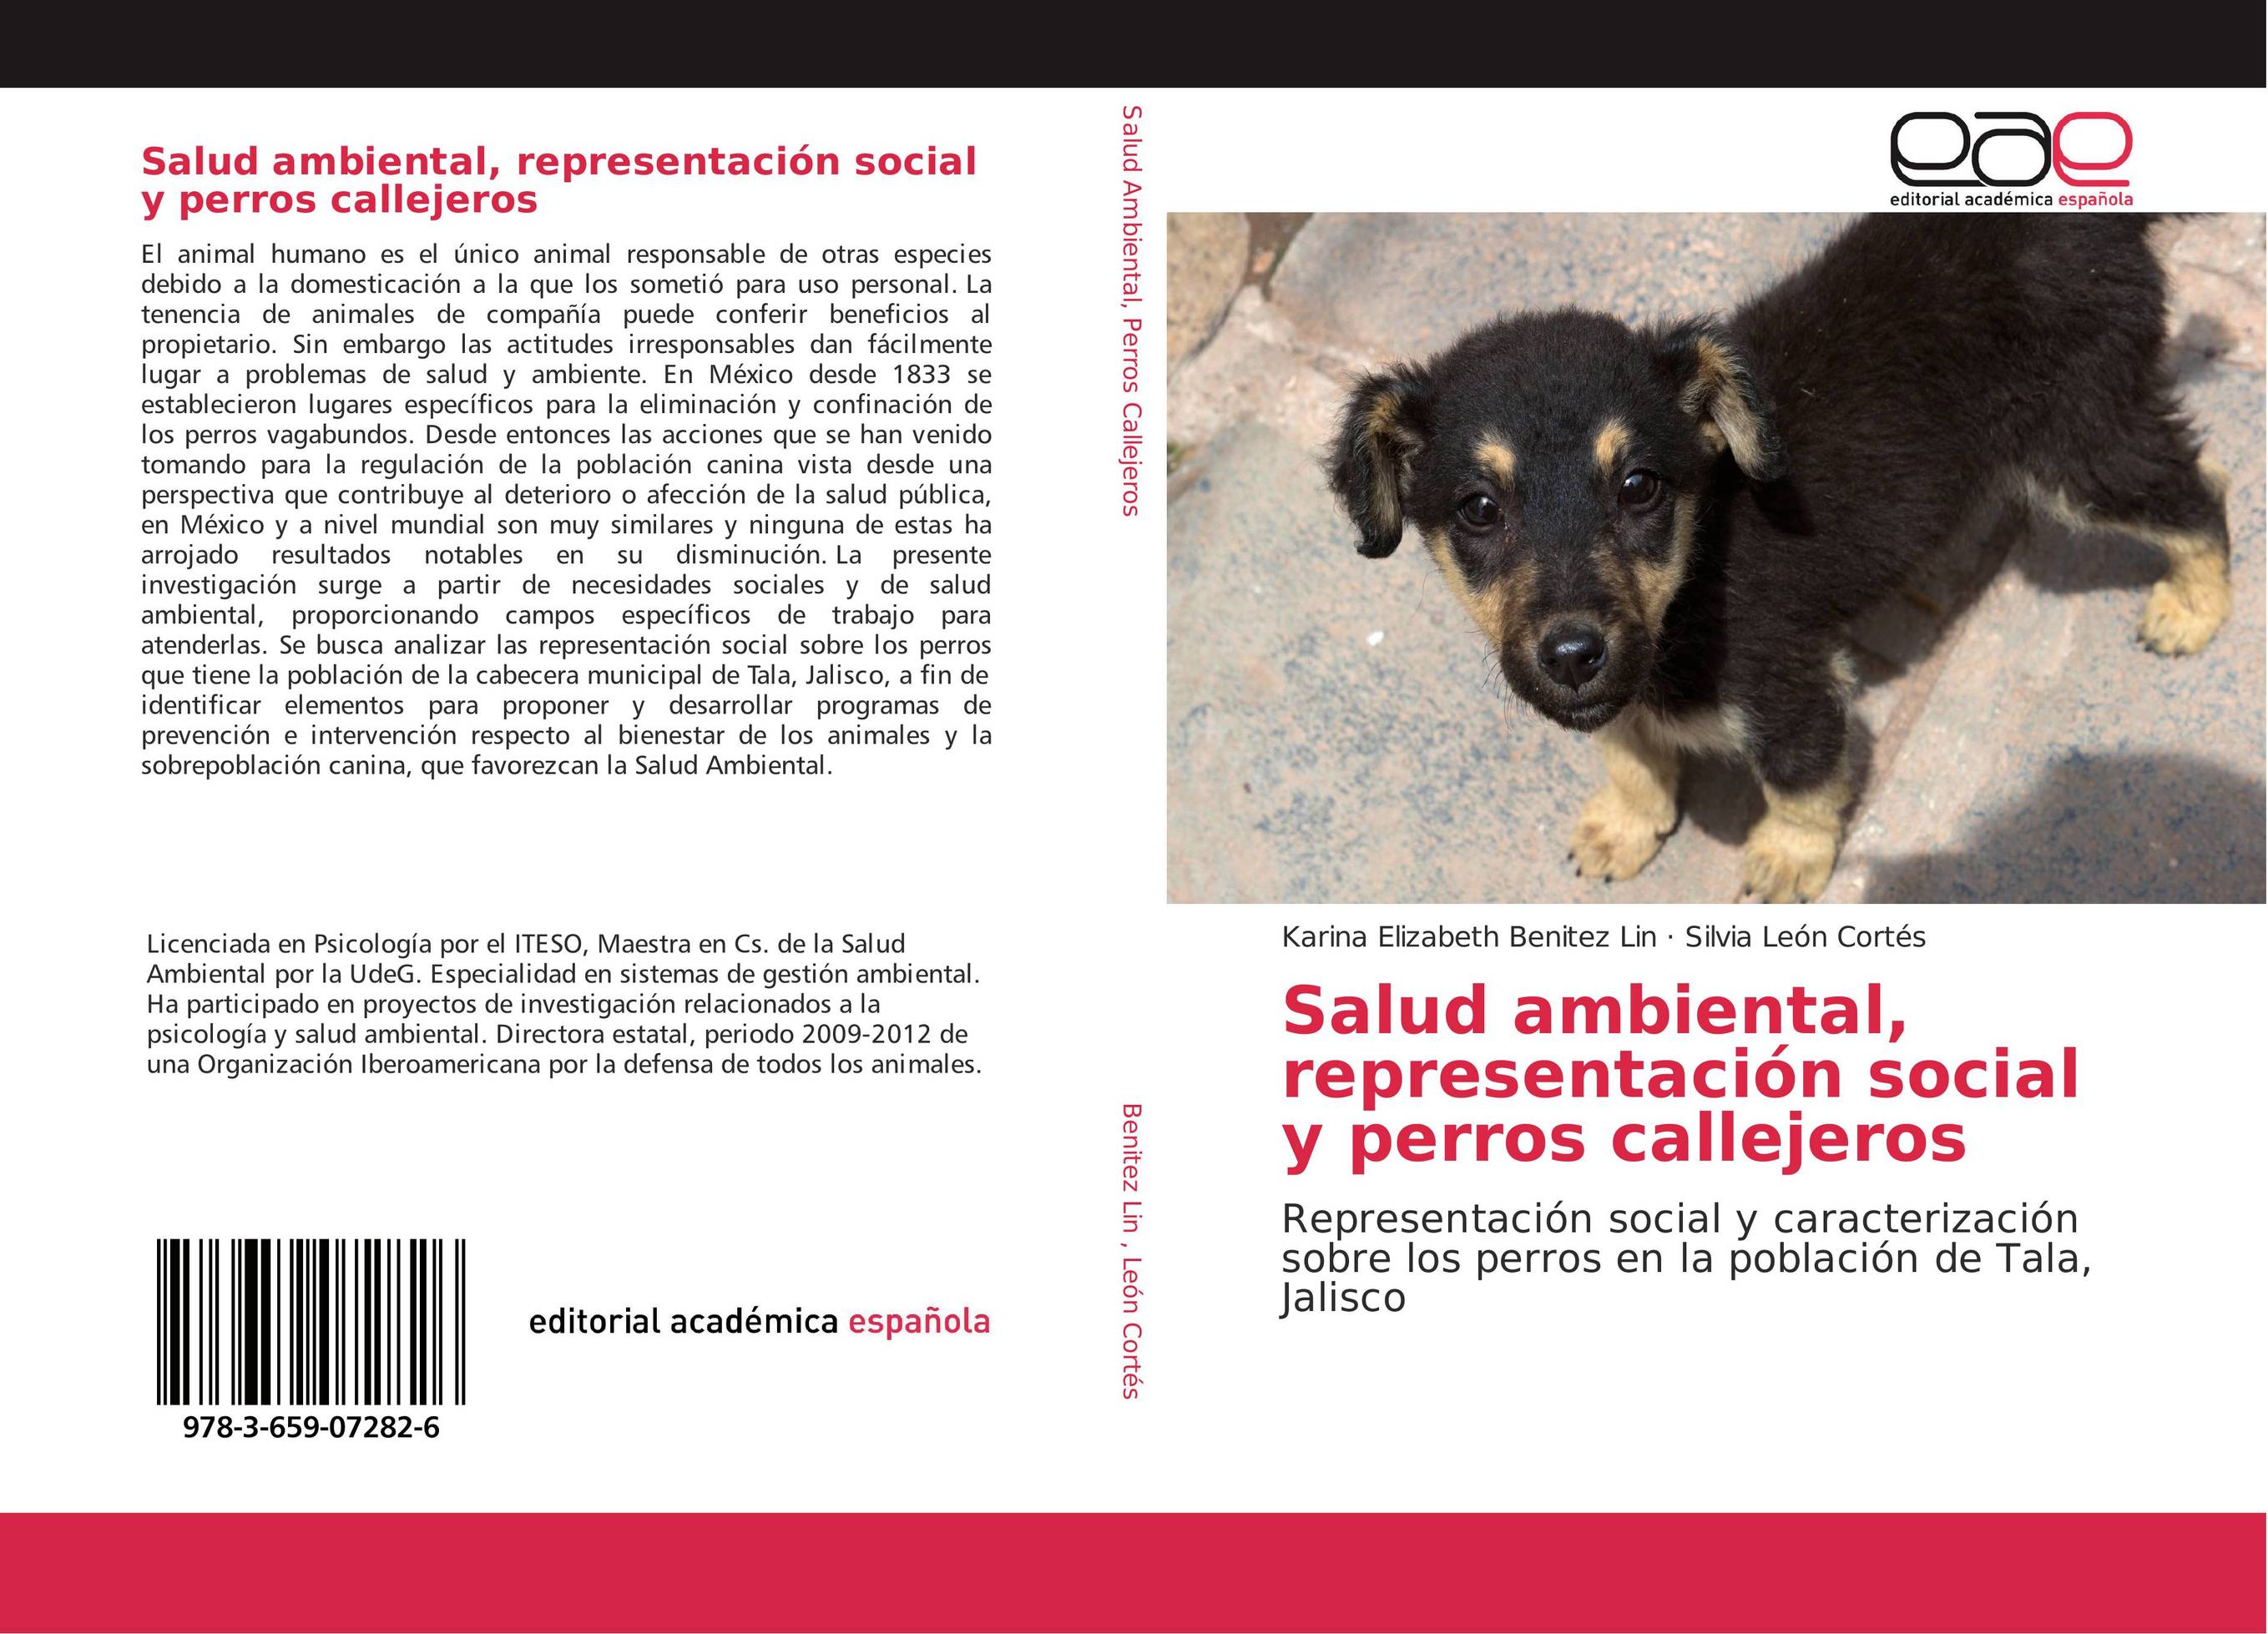 Salud ambiental, representación social y perros callejeros